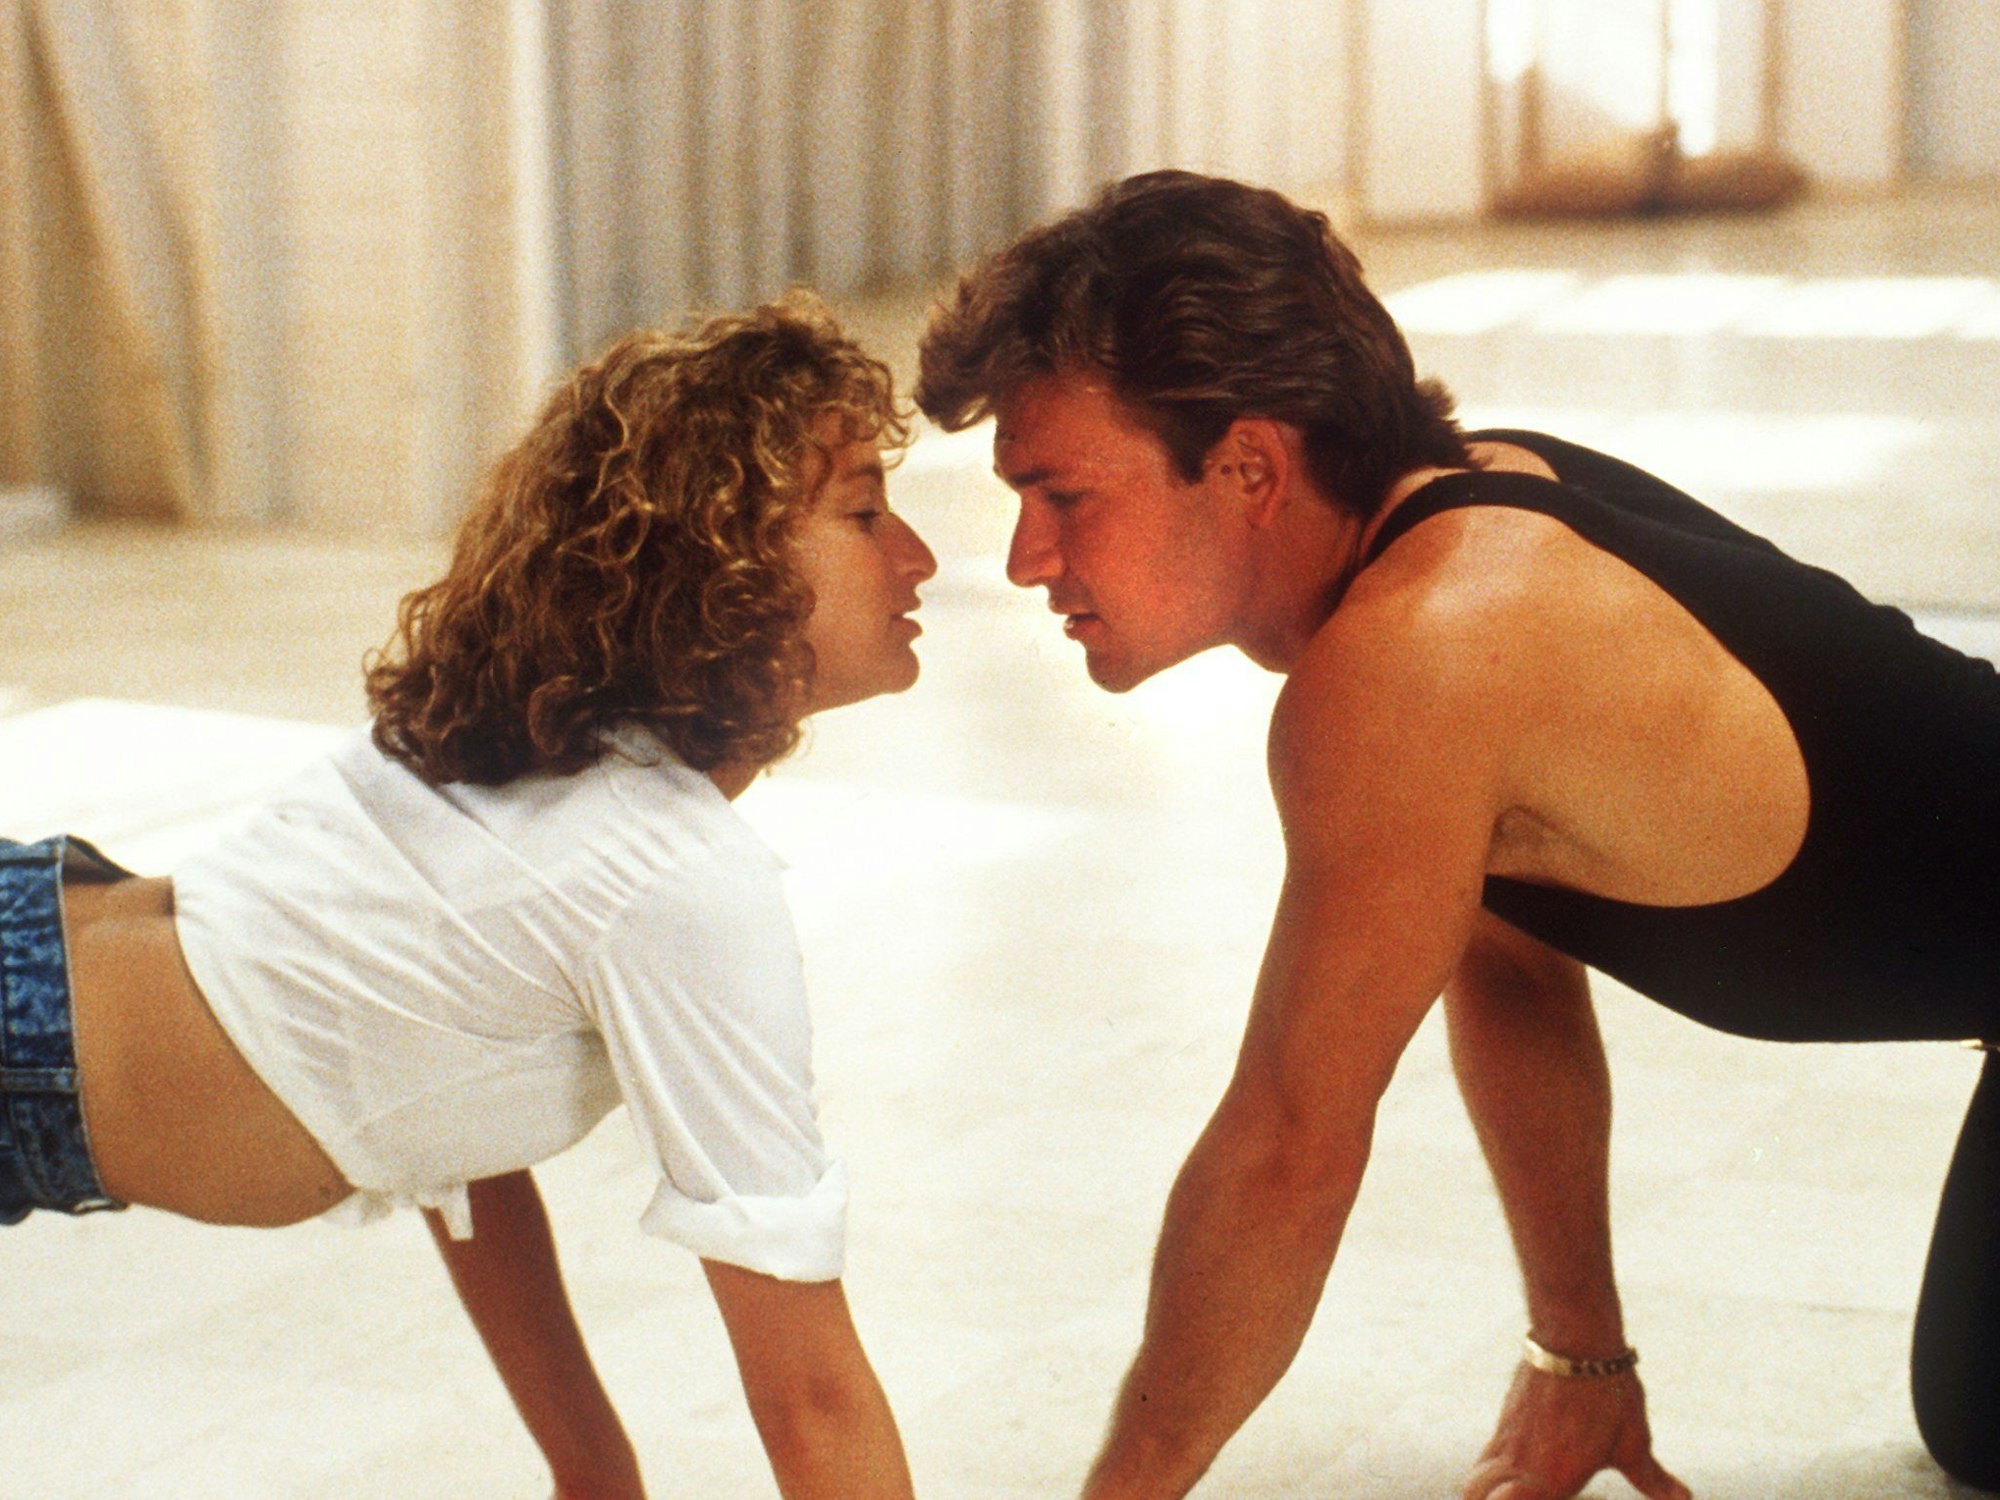 Patrick Swayze und Jennifer Grey spielen in "Dirty Dancing" (Szenenfoto von 1987).